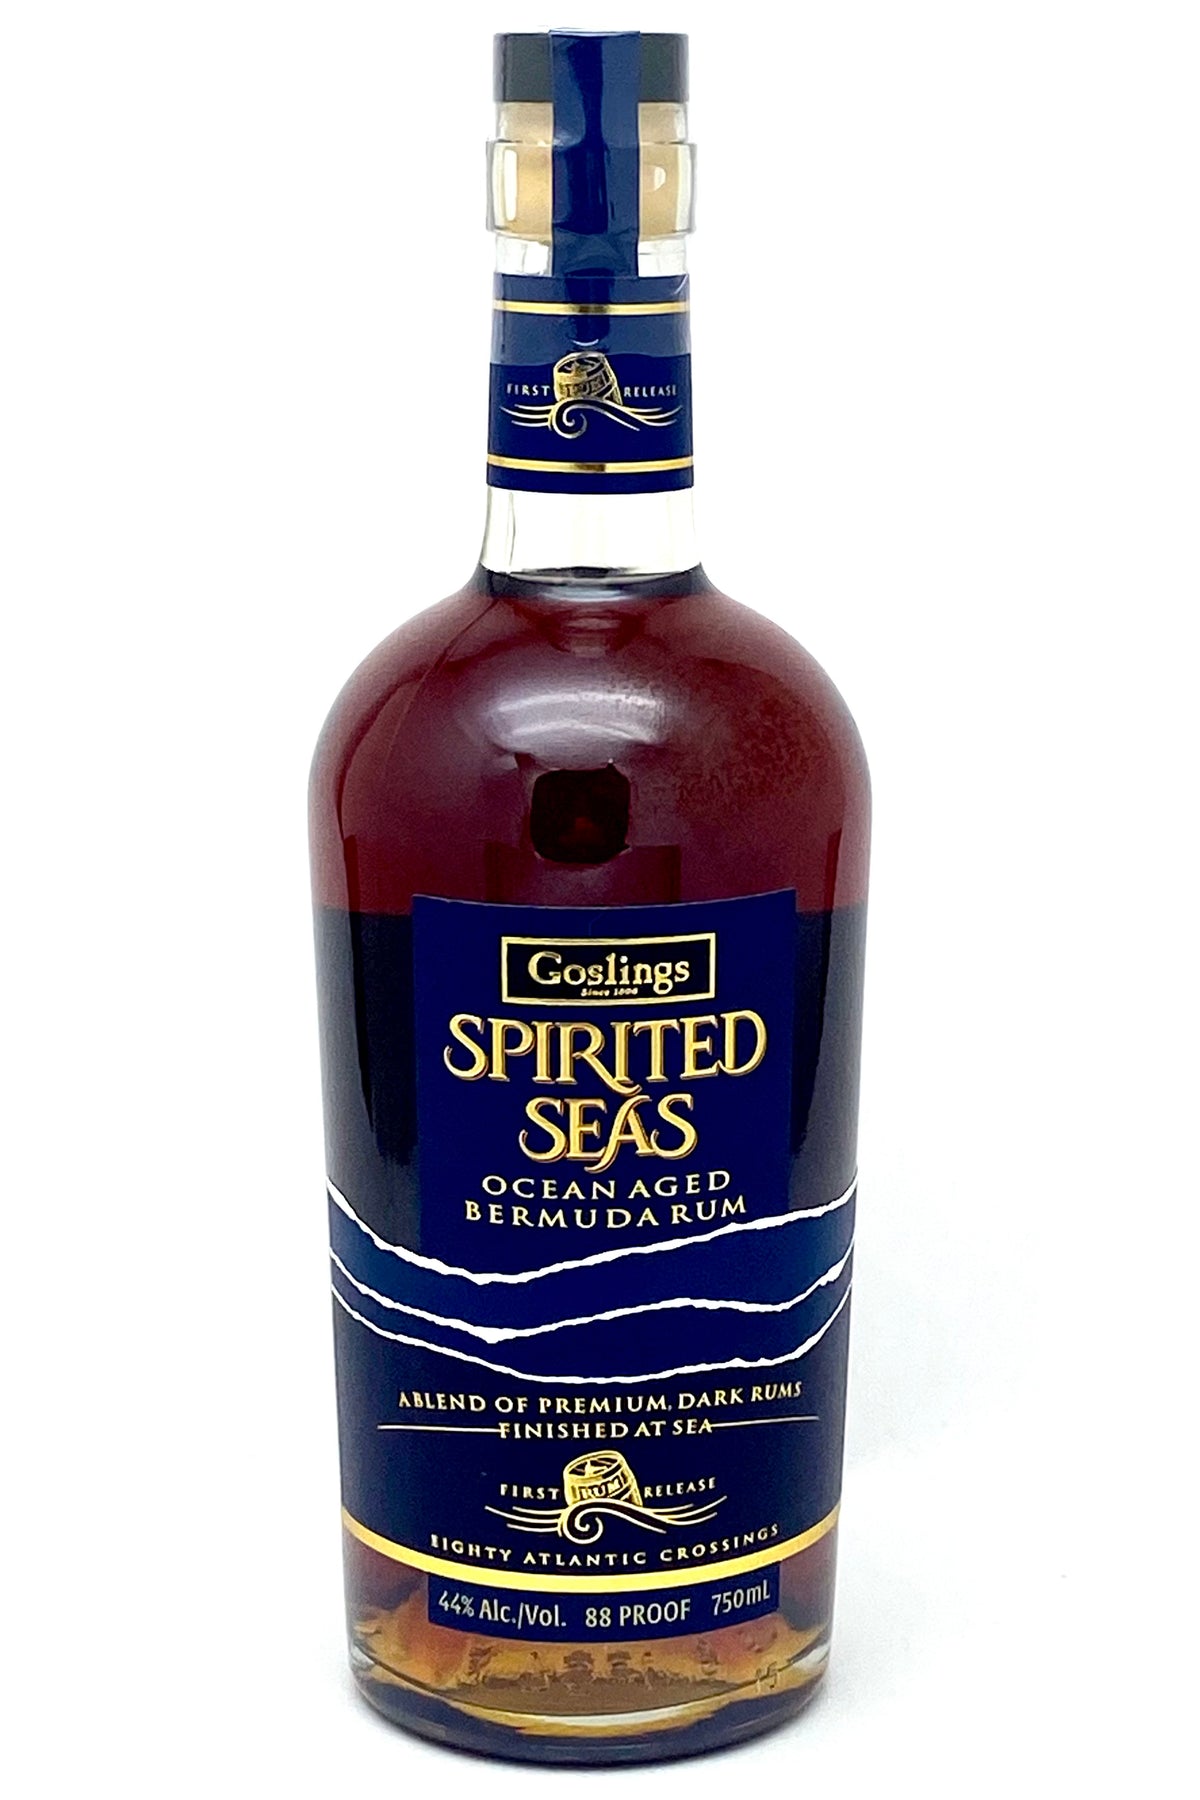 Goslings Spirited Seas Dark Rum